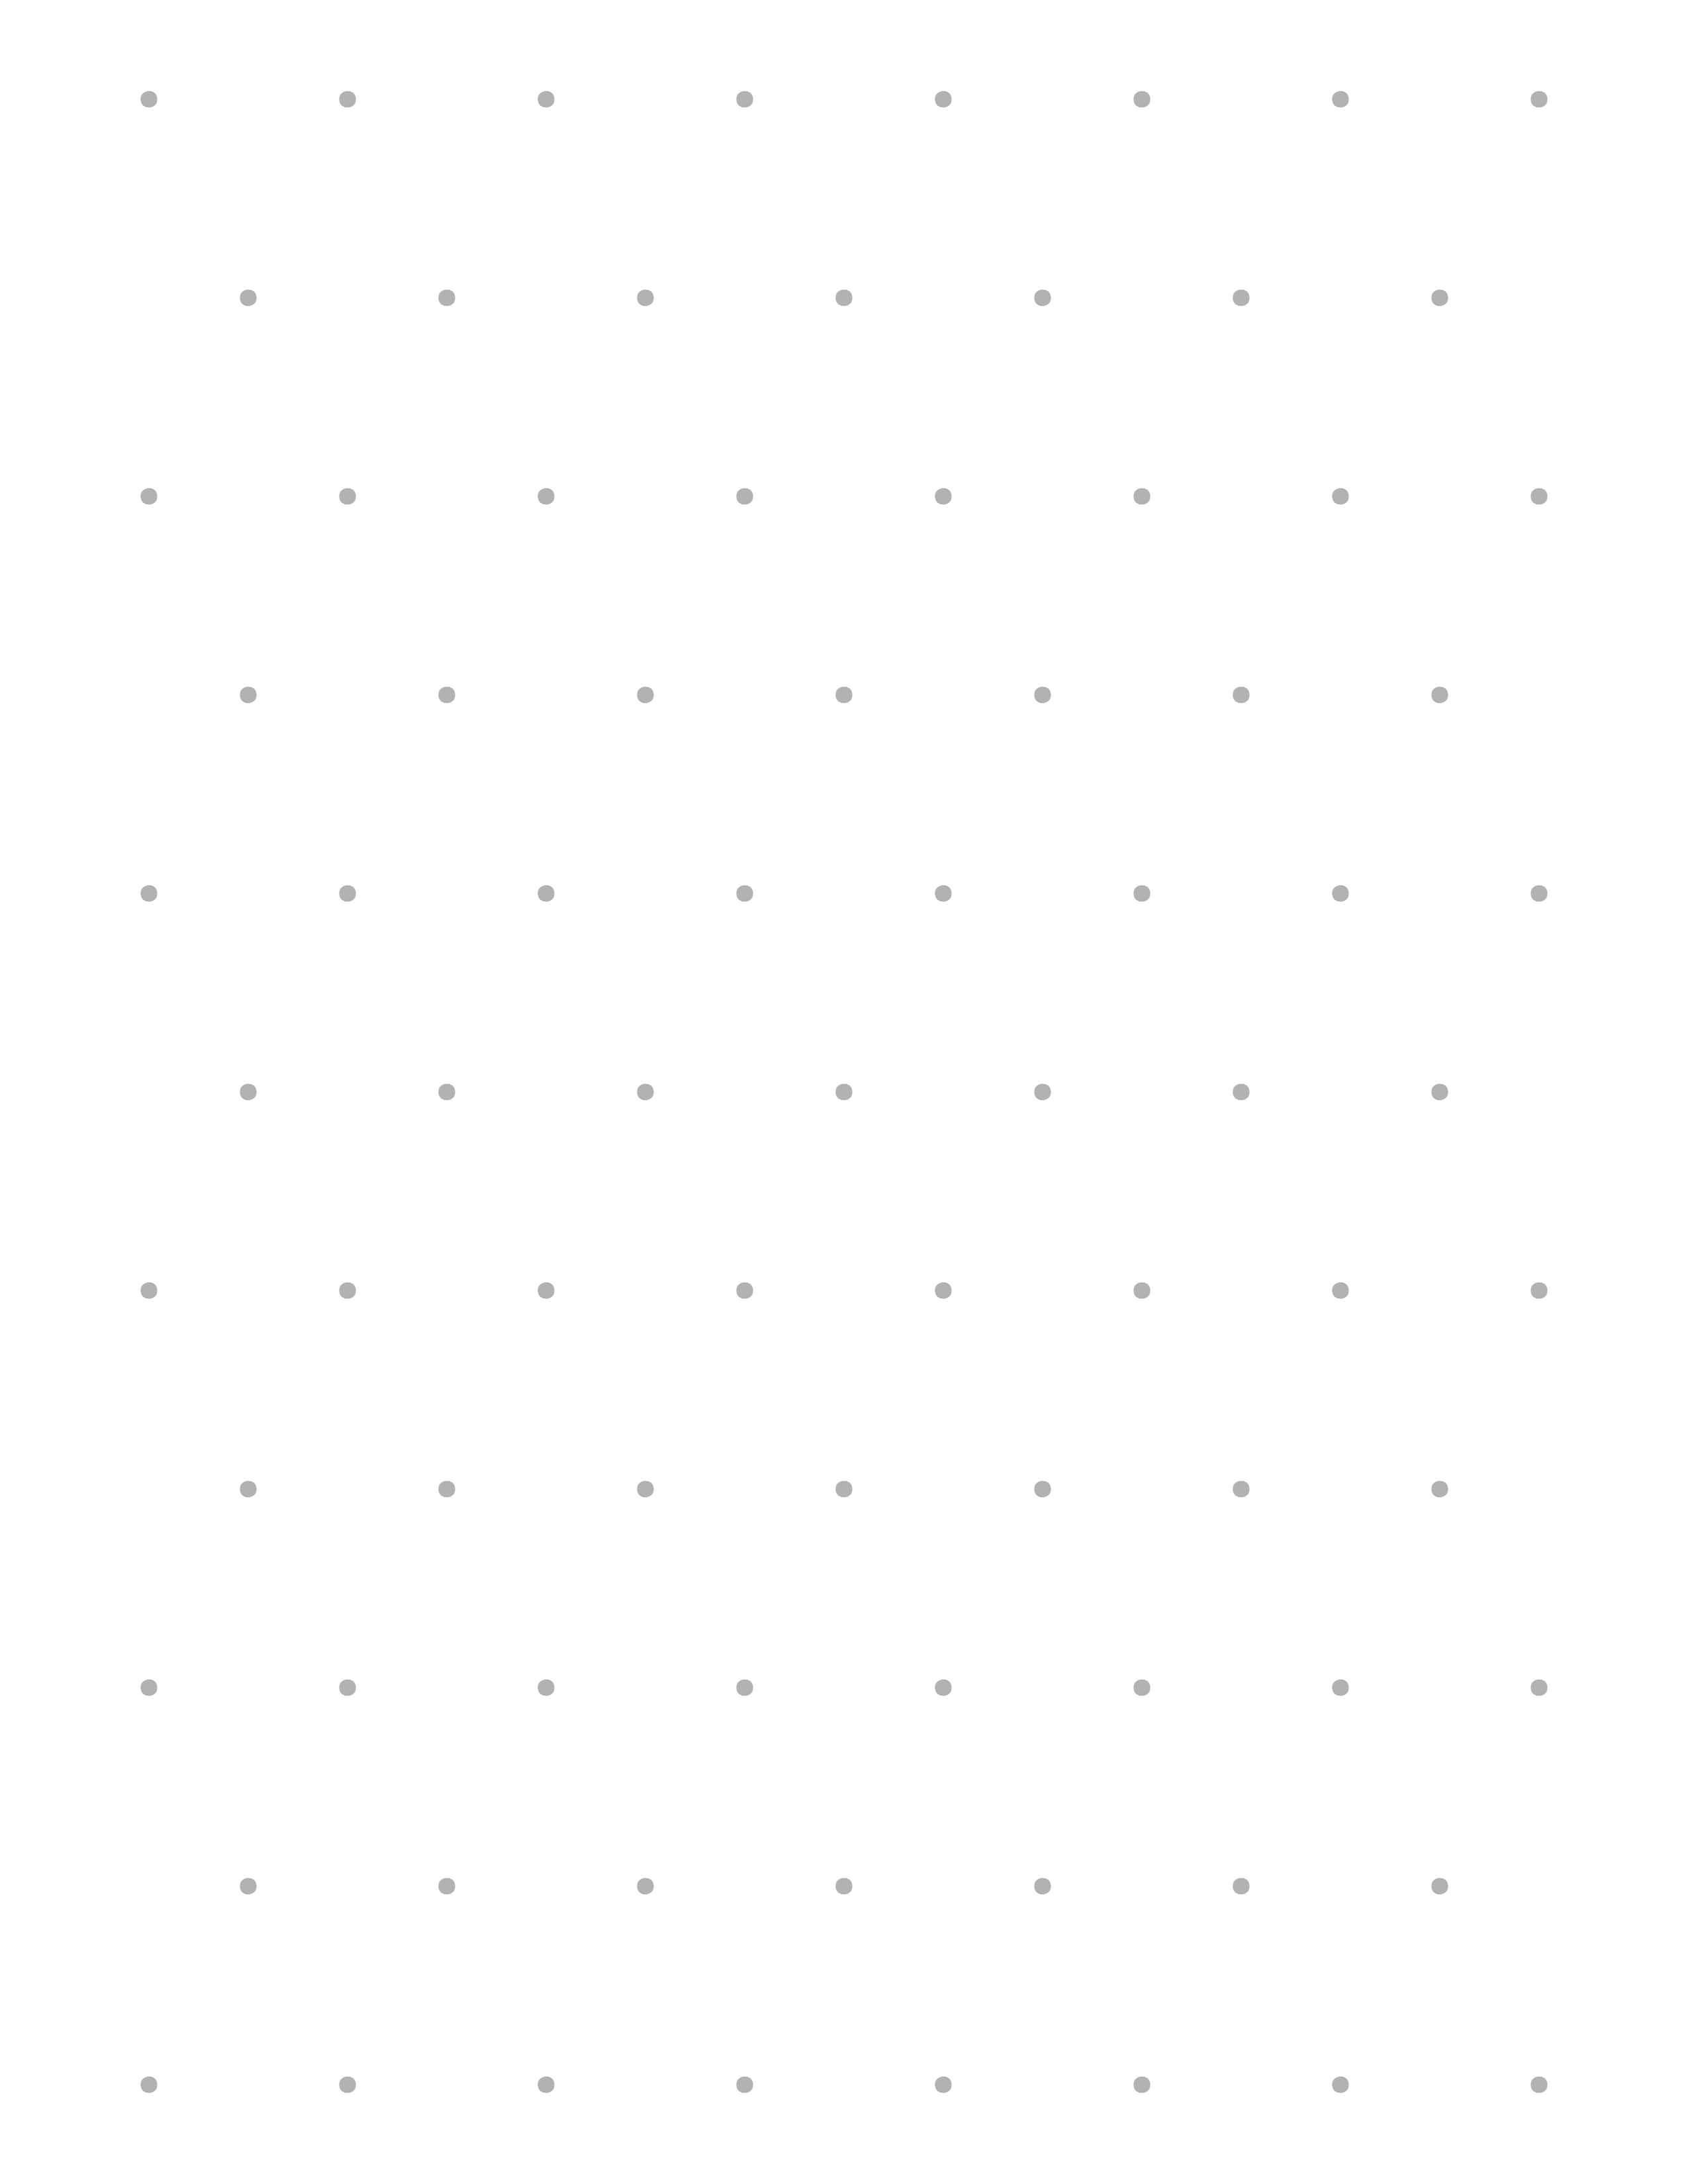 Изометрическая сетка (бумага) - распечатать в формате а4